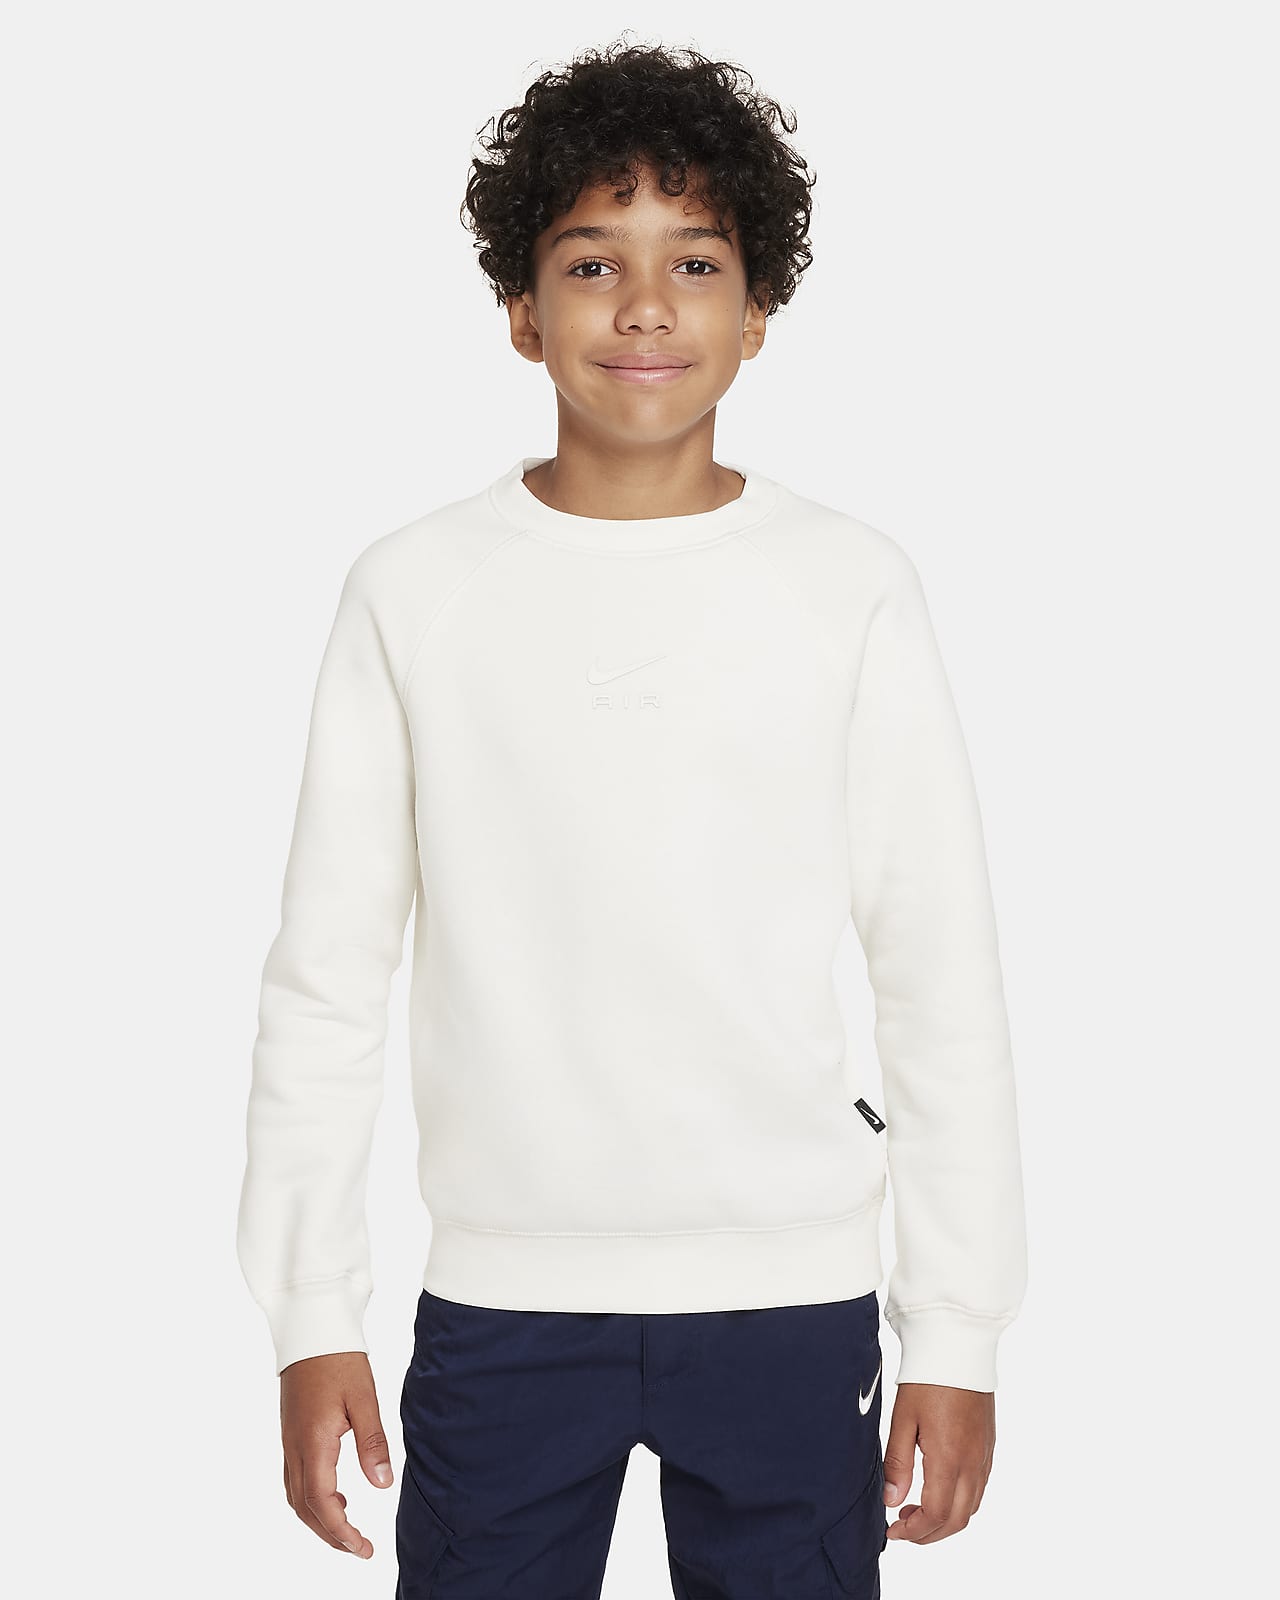 Nike Air Big Kids' Sweatshirt